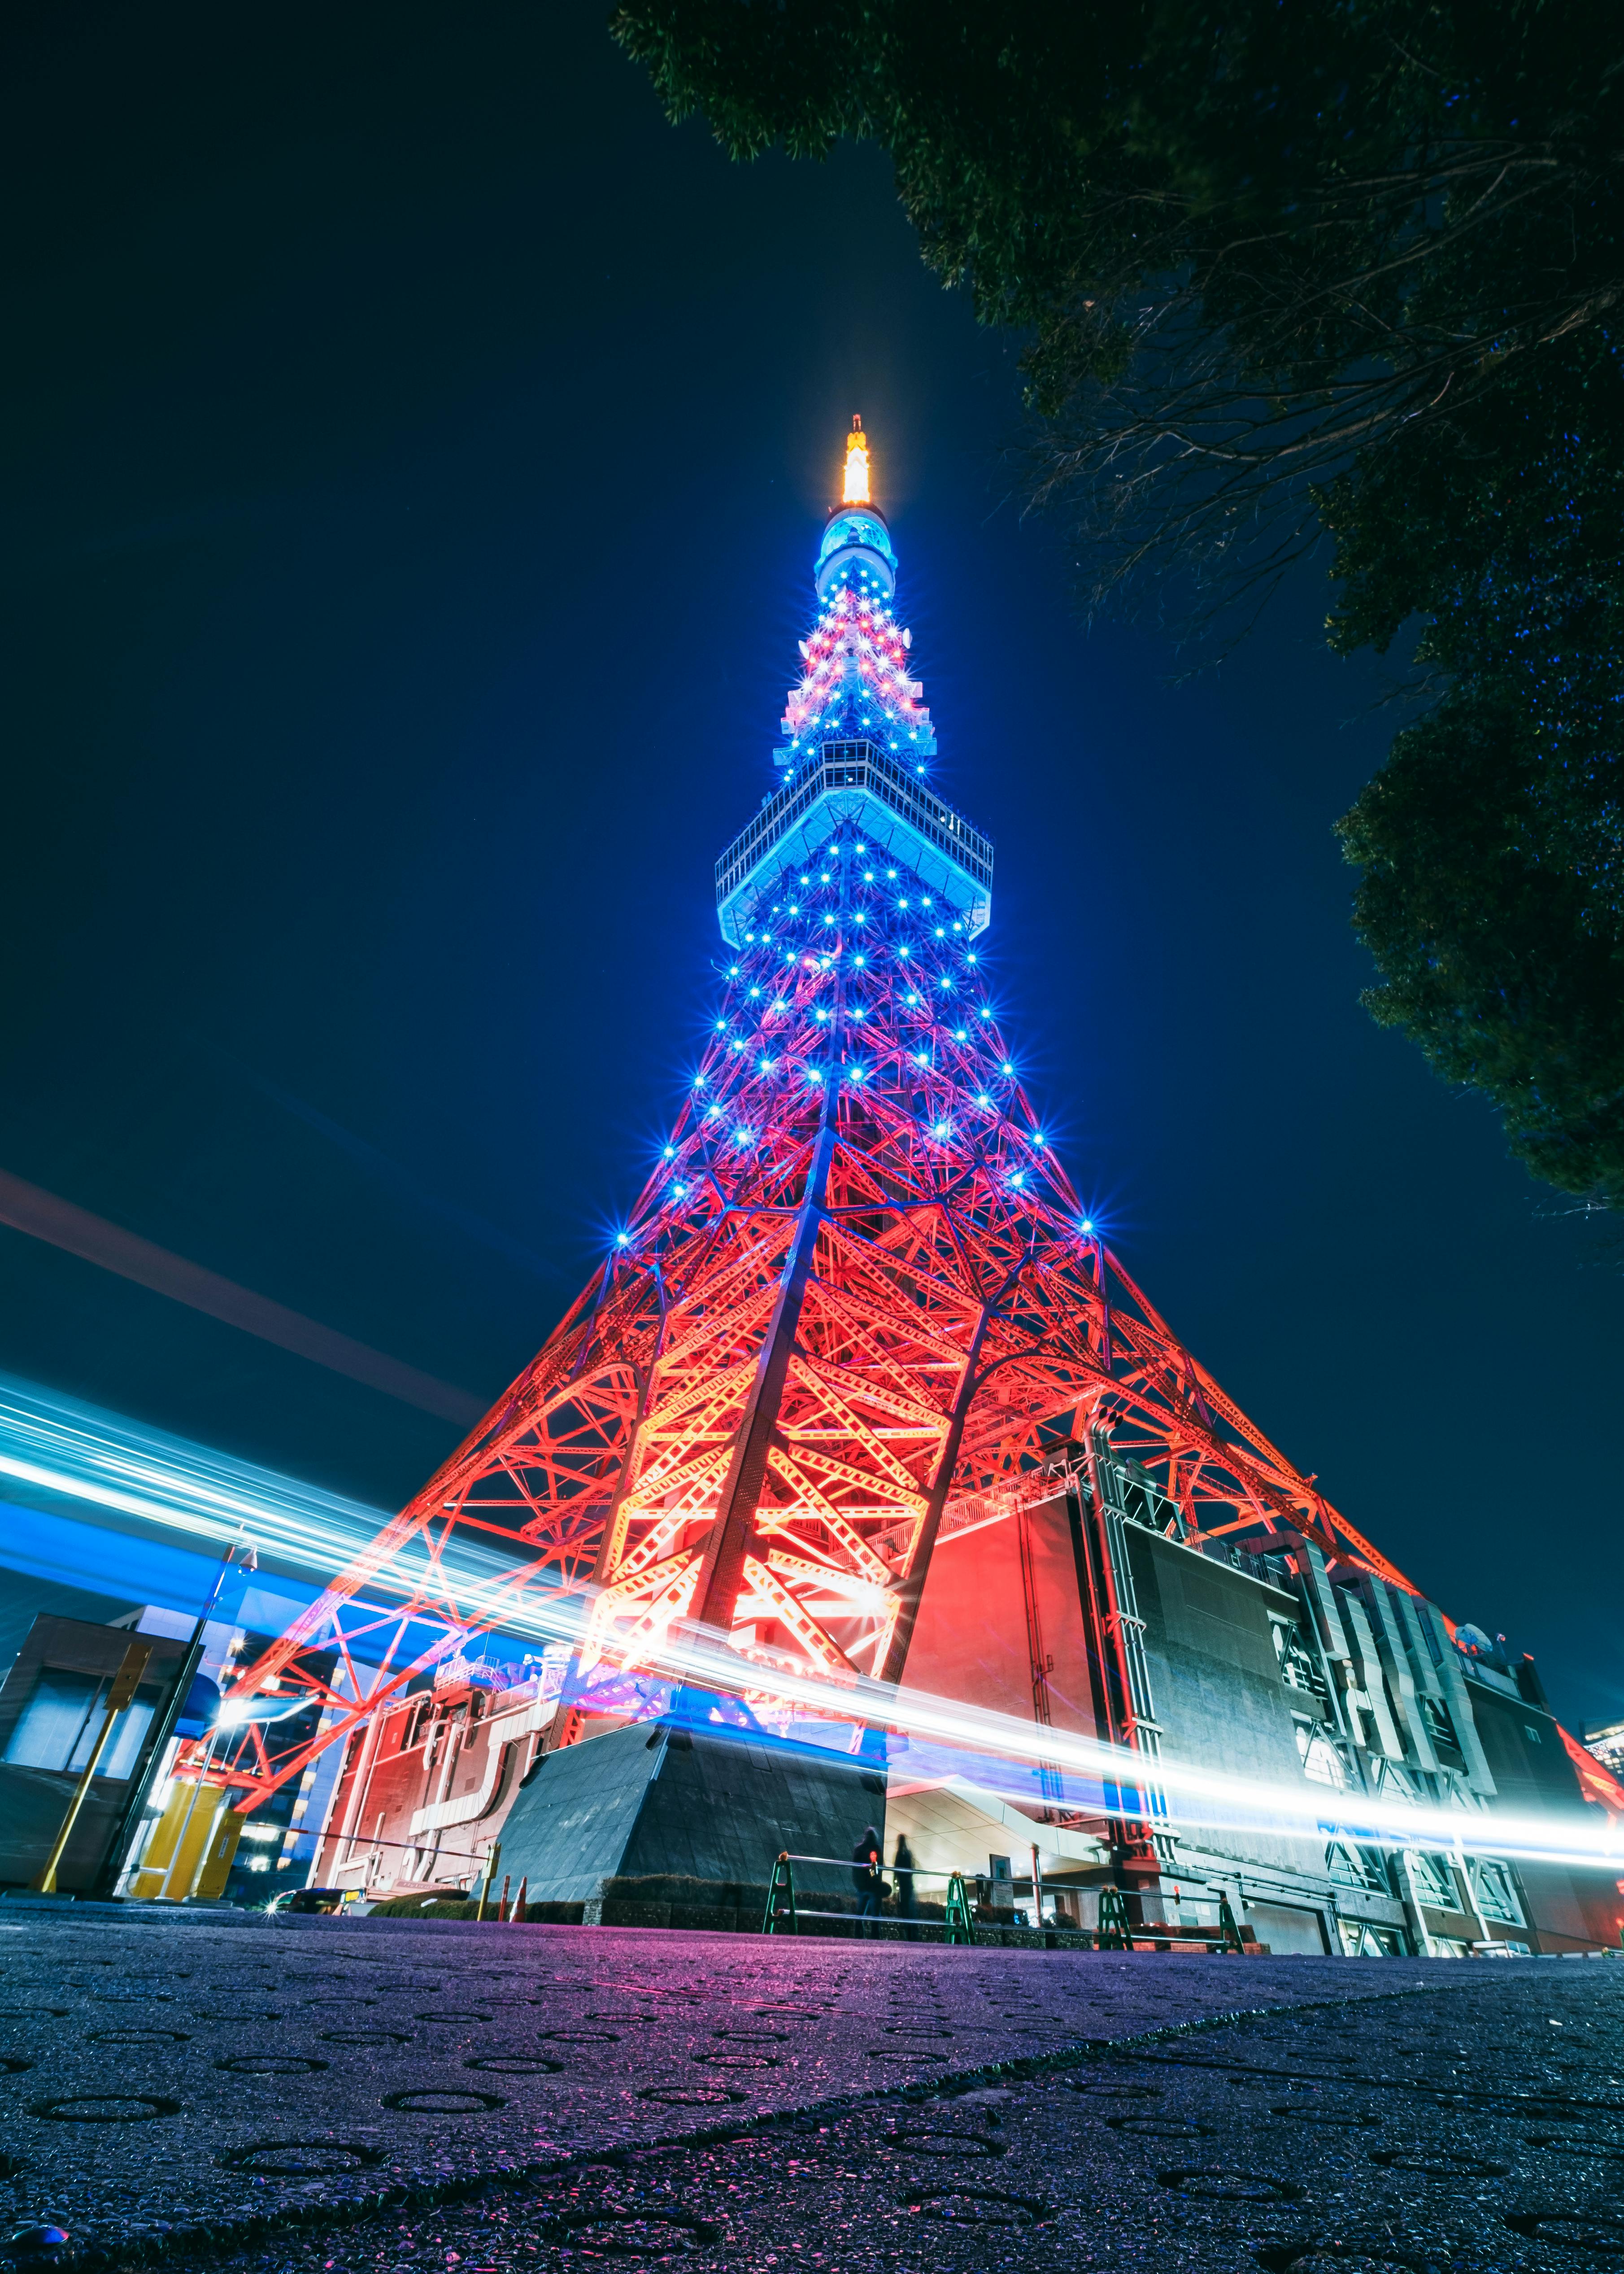 Tháp Tokyo  Biểu tượng tự hào của thủ đô đất nước mặt trời mọc   Japannetvn